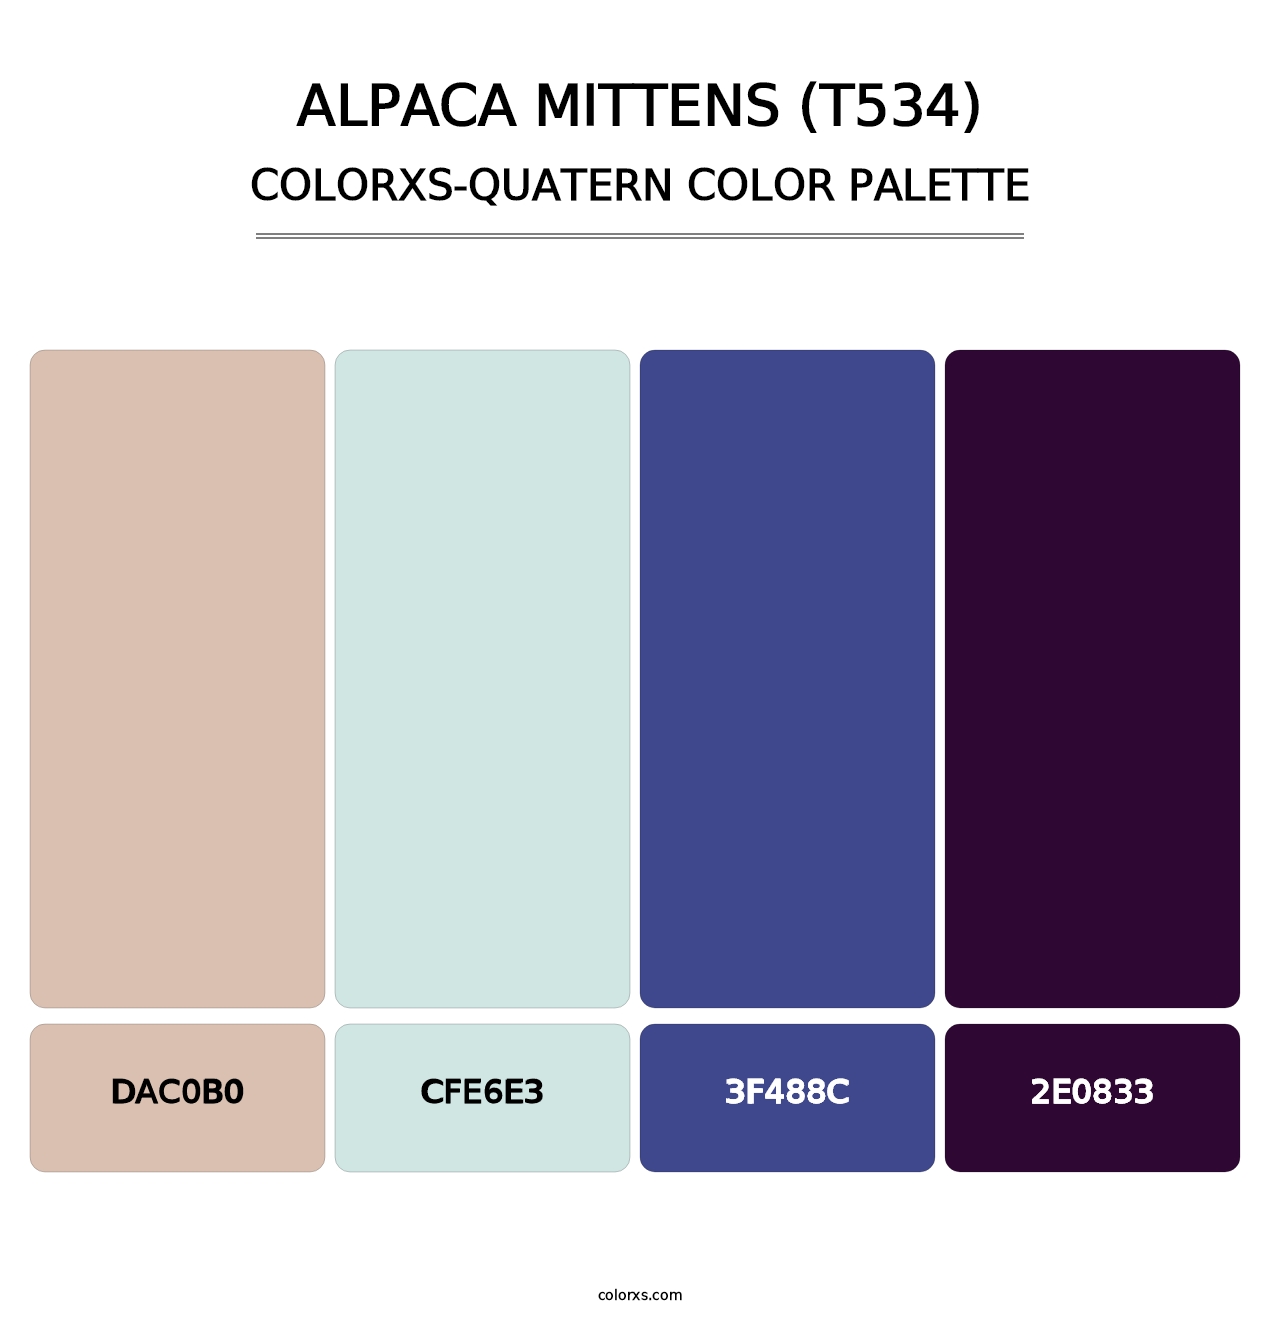 Alpaca Mittens (T534) - Colorxs Quatern Palette